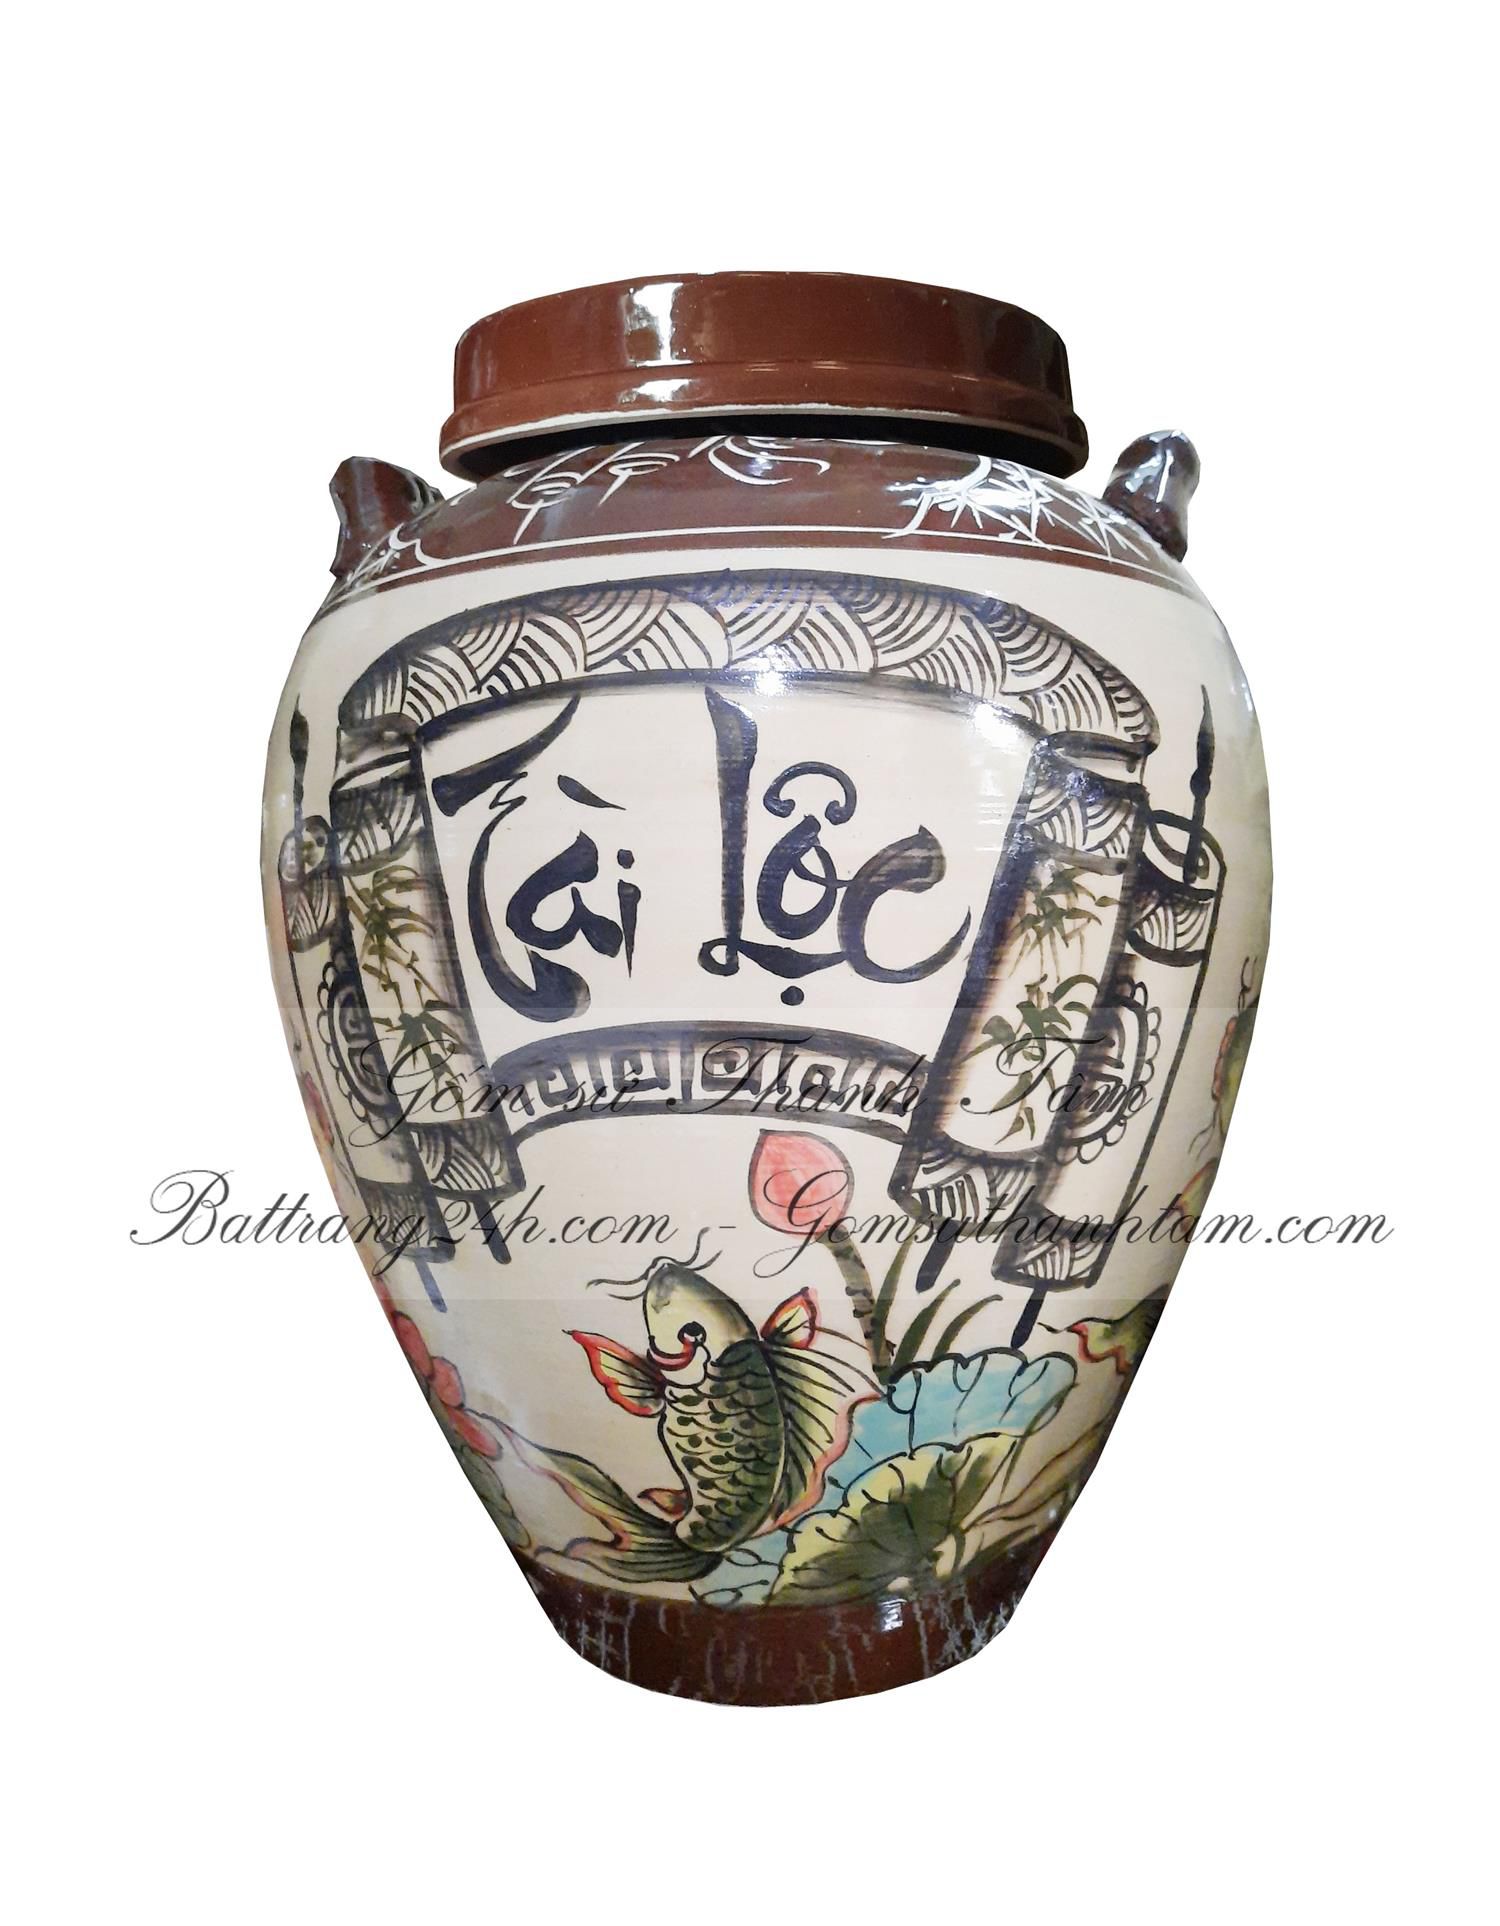 Đơn vị cung cấp vò rượu gốm sứ Bát Tràng men bóng vẽ hoa văn Tài Lộc sắc nét chất lượng tốt, bền đẹp